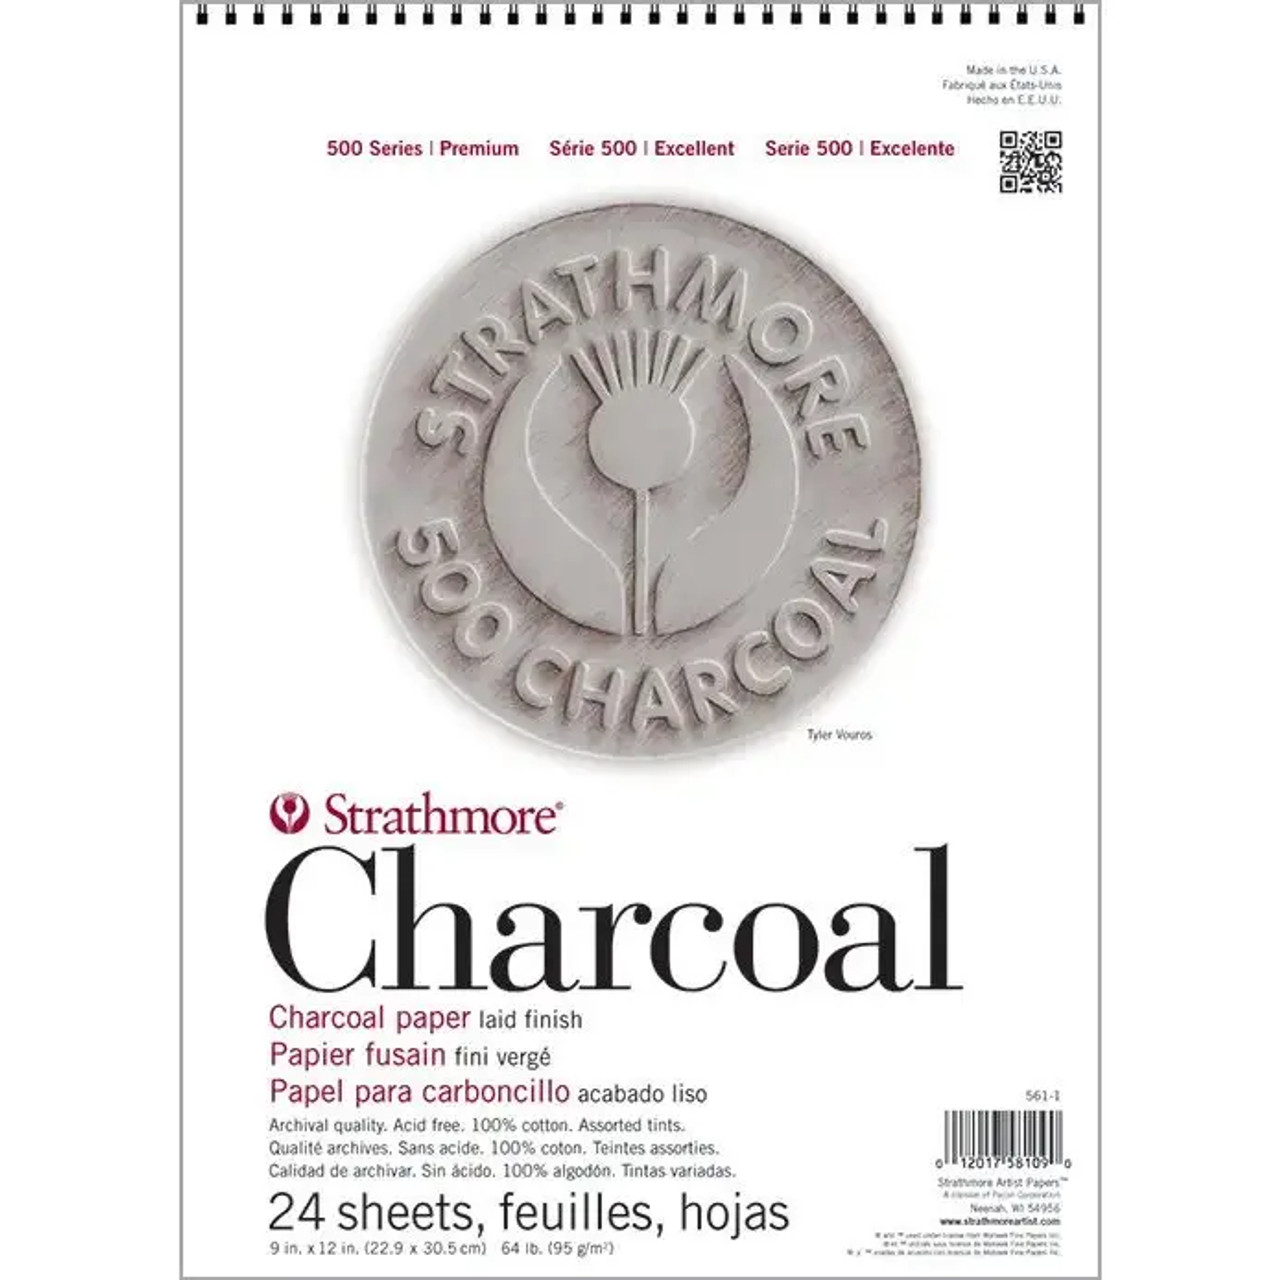 Strathmore 500 Series Charcoal Paper - 19 x 25, Smoke Gray